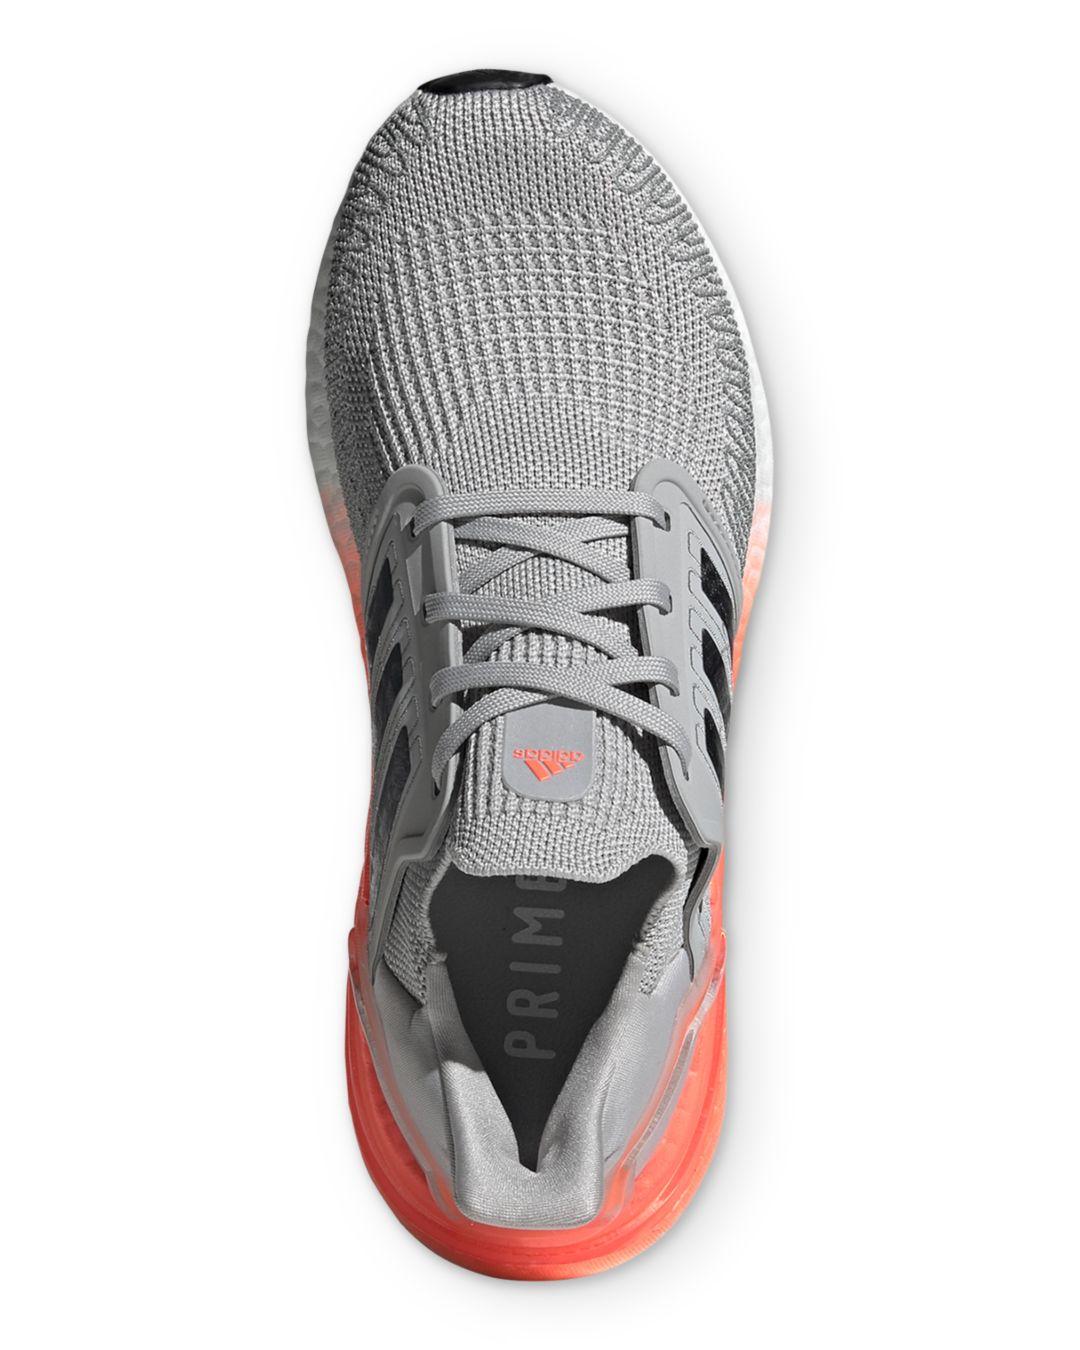 Adidas Women S Ultraboost Lace Up Sneakers In Grey Orange Gray Lyst